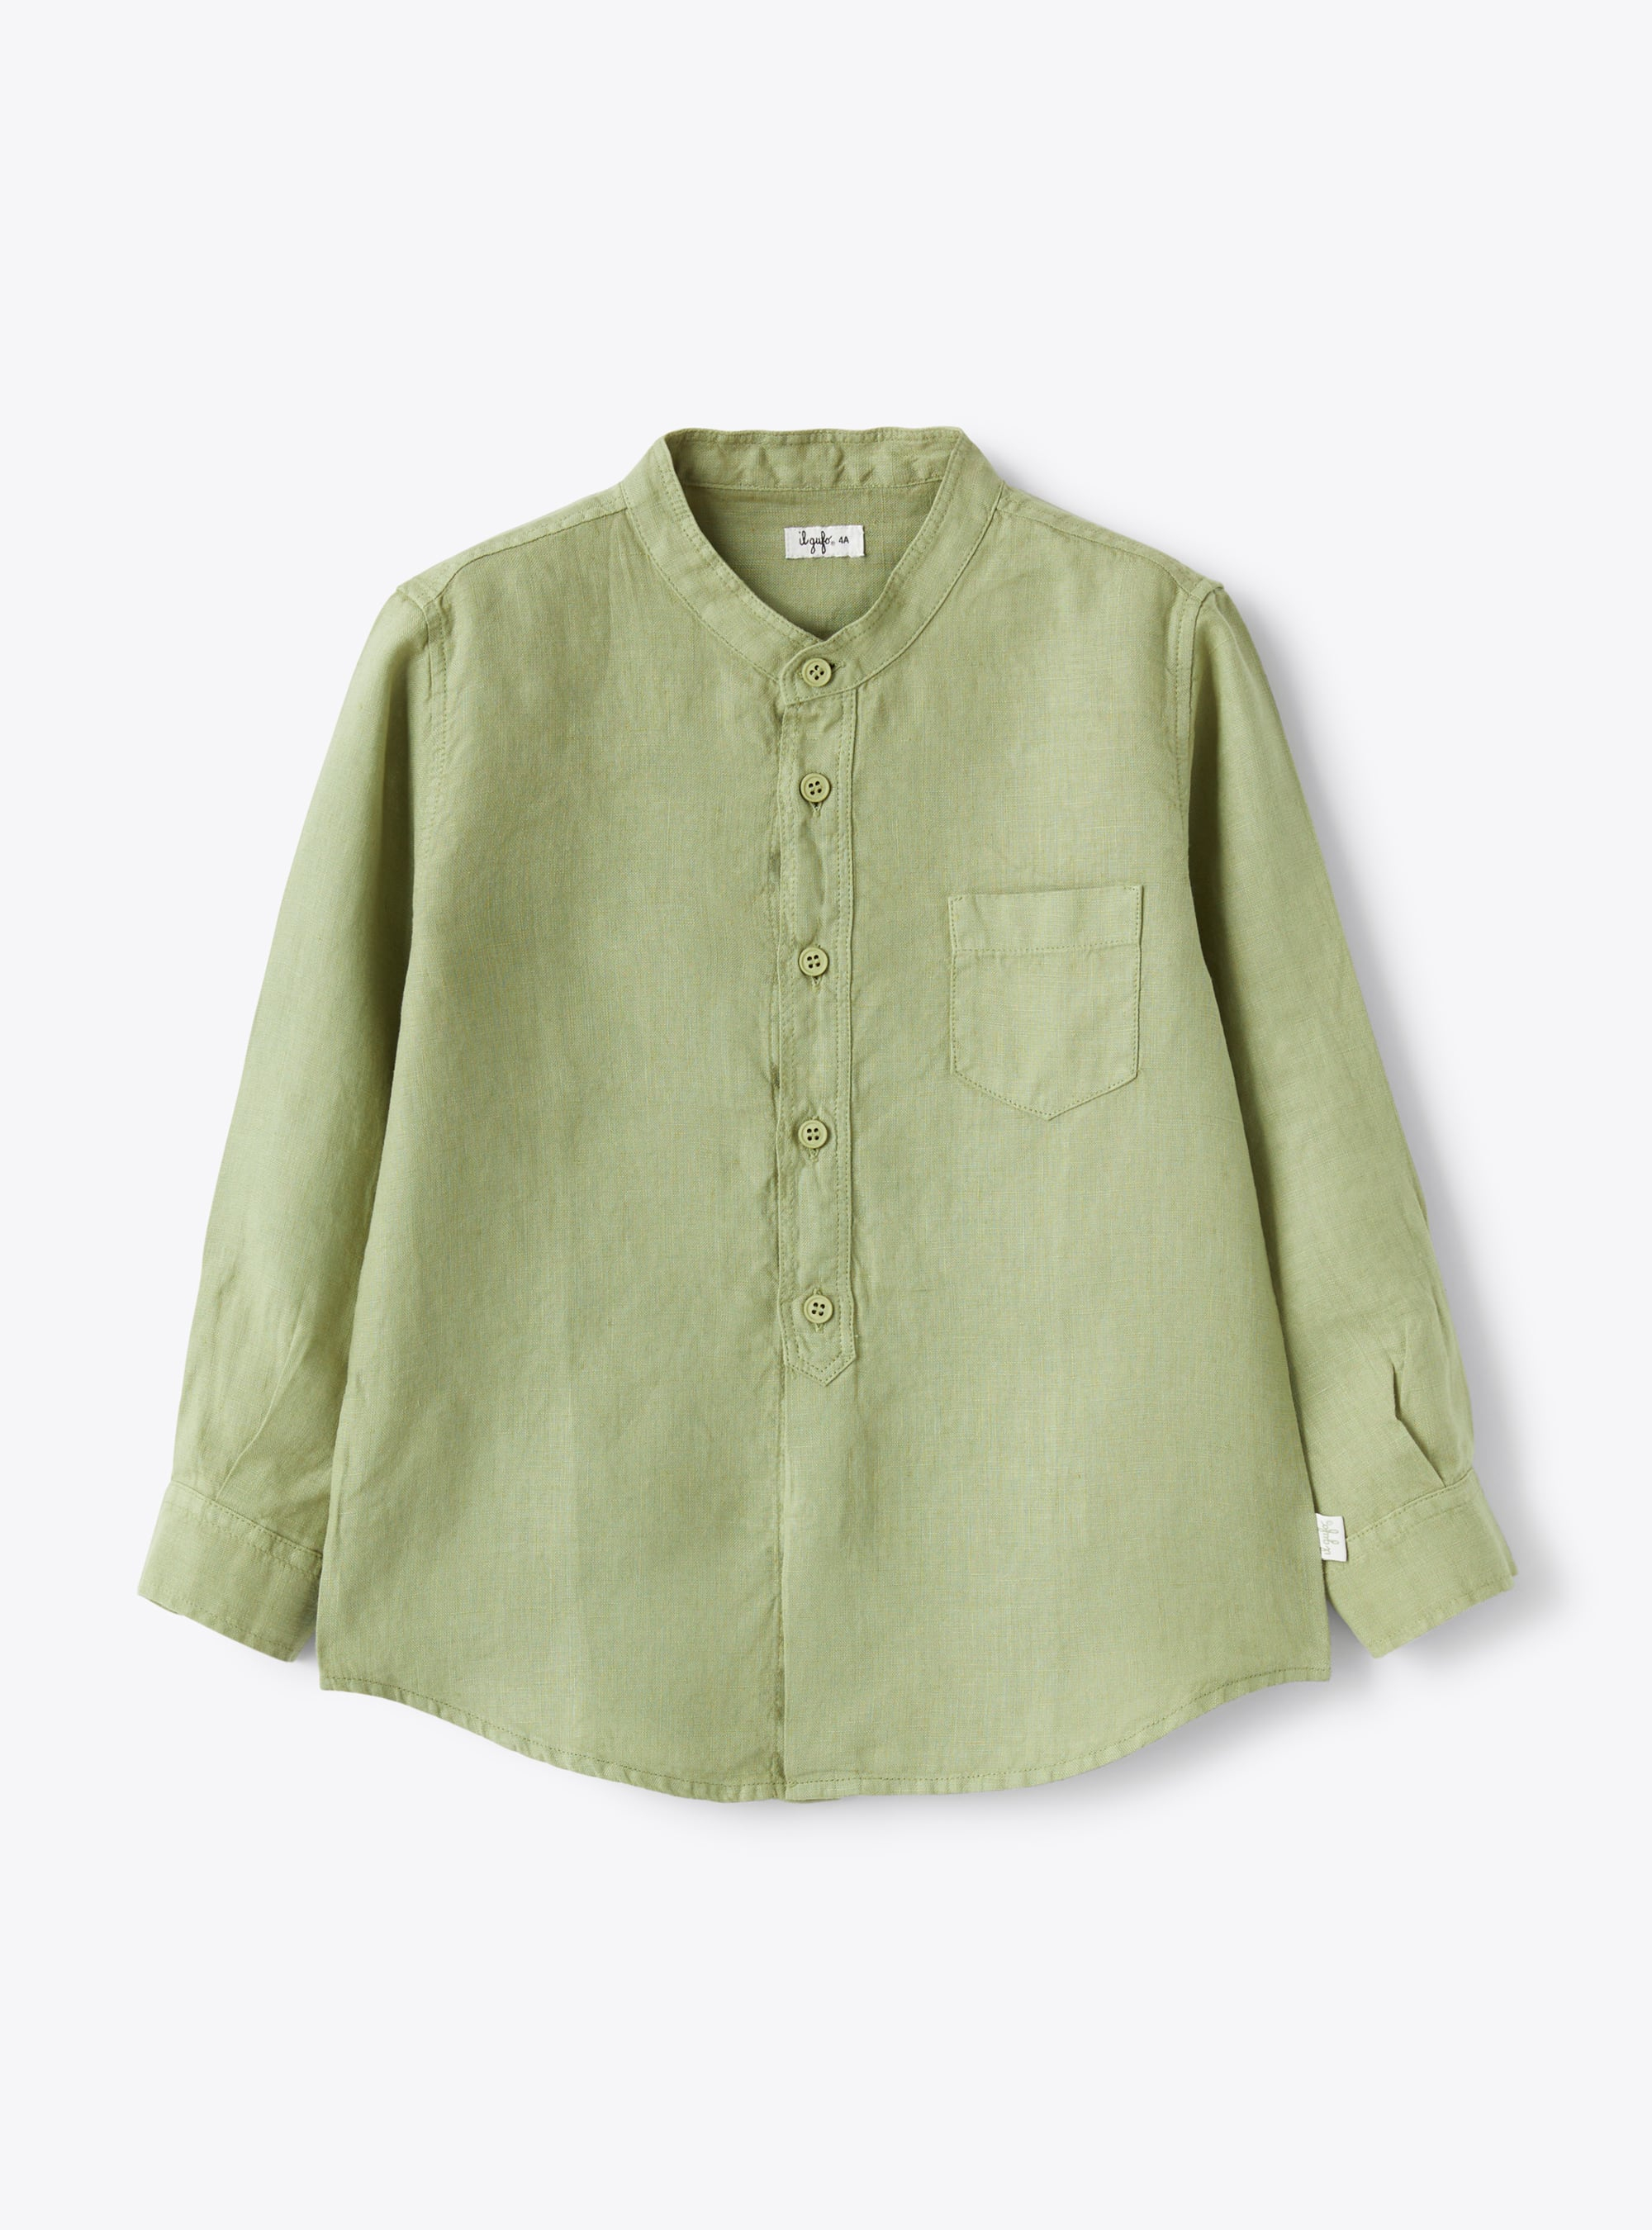 Mandarin-collar shirt in sage-green linen - Shirts - Il Gufo